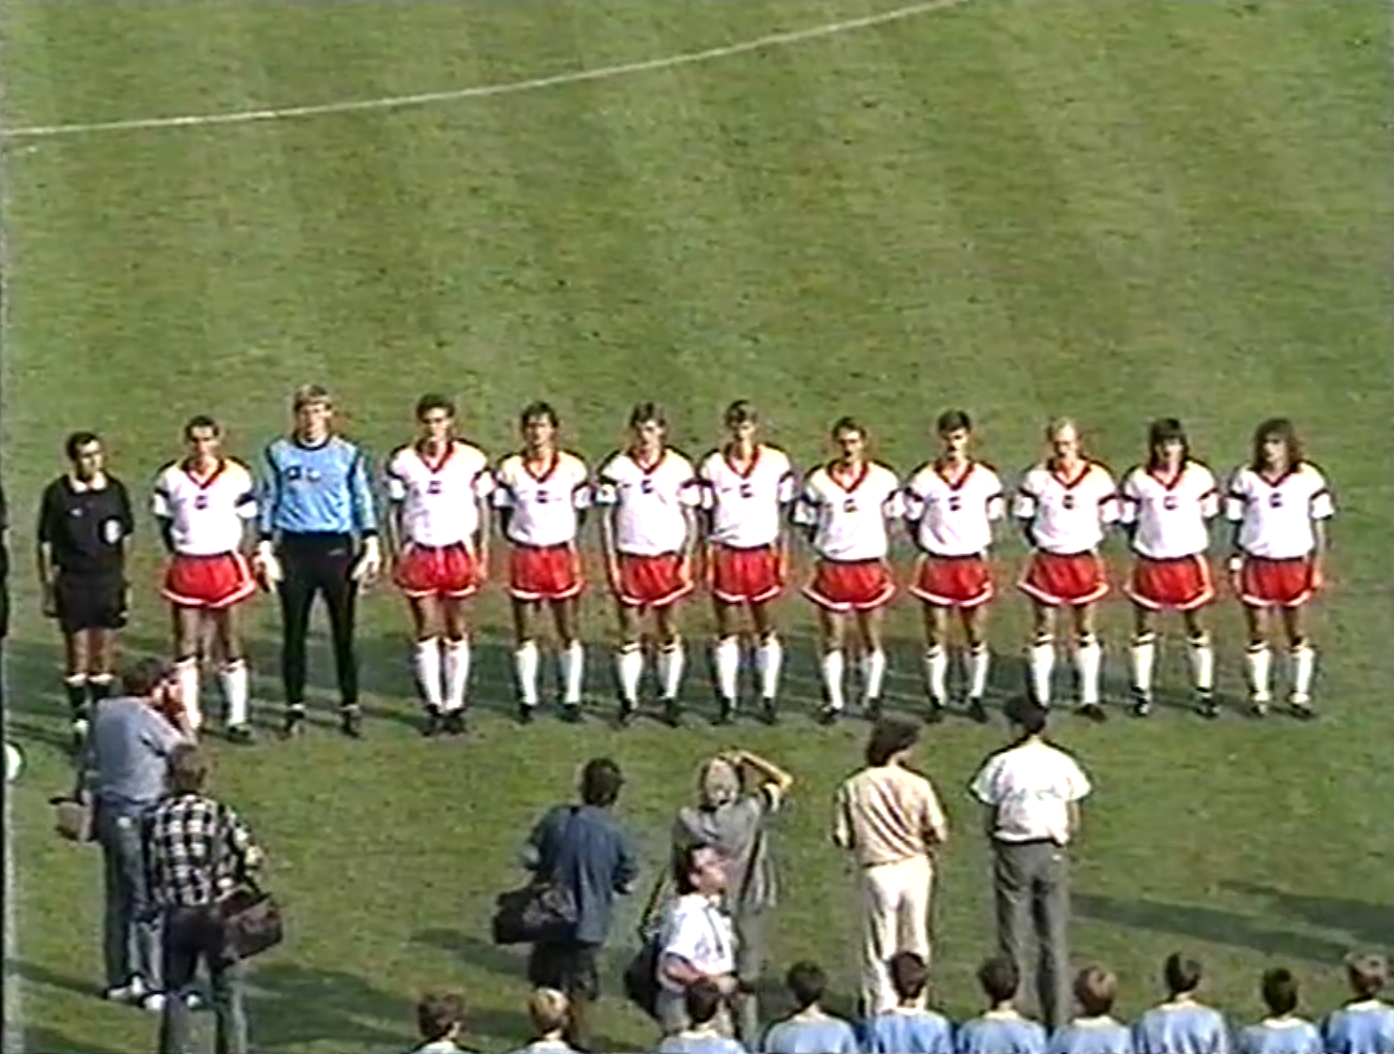 Reprezentacja Polski przed meczem z ZSRR w Lubinie, 23 sierpnia 1989 roku.